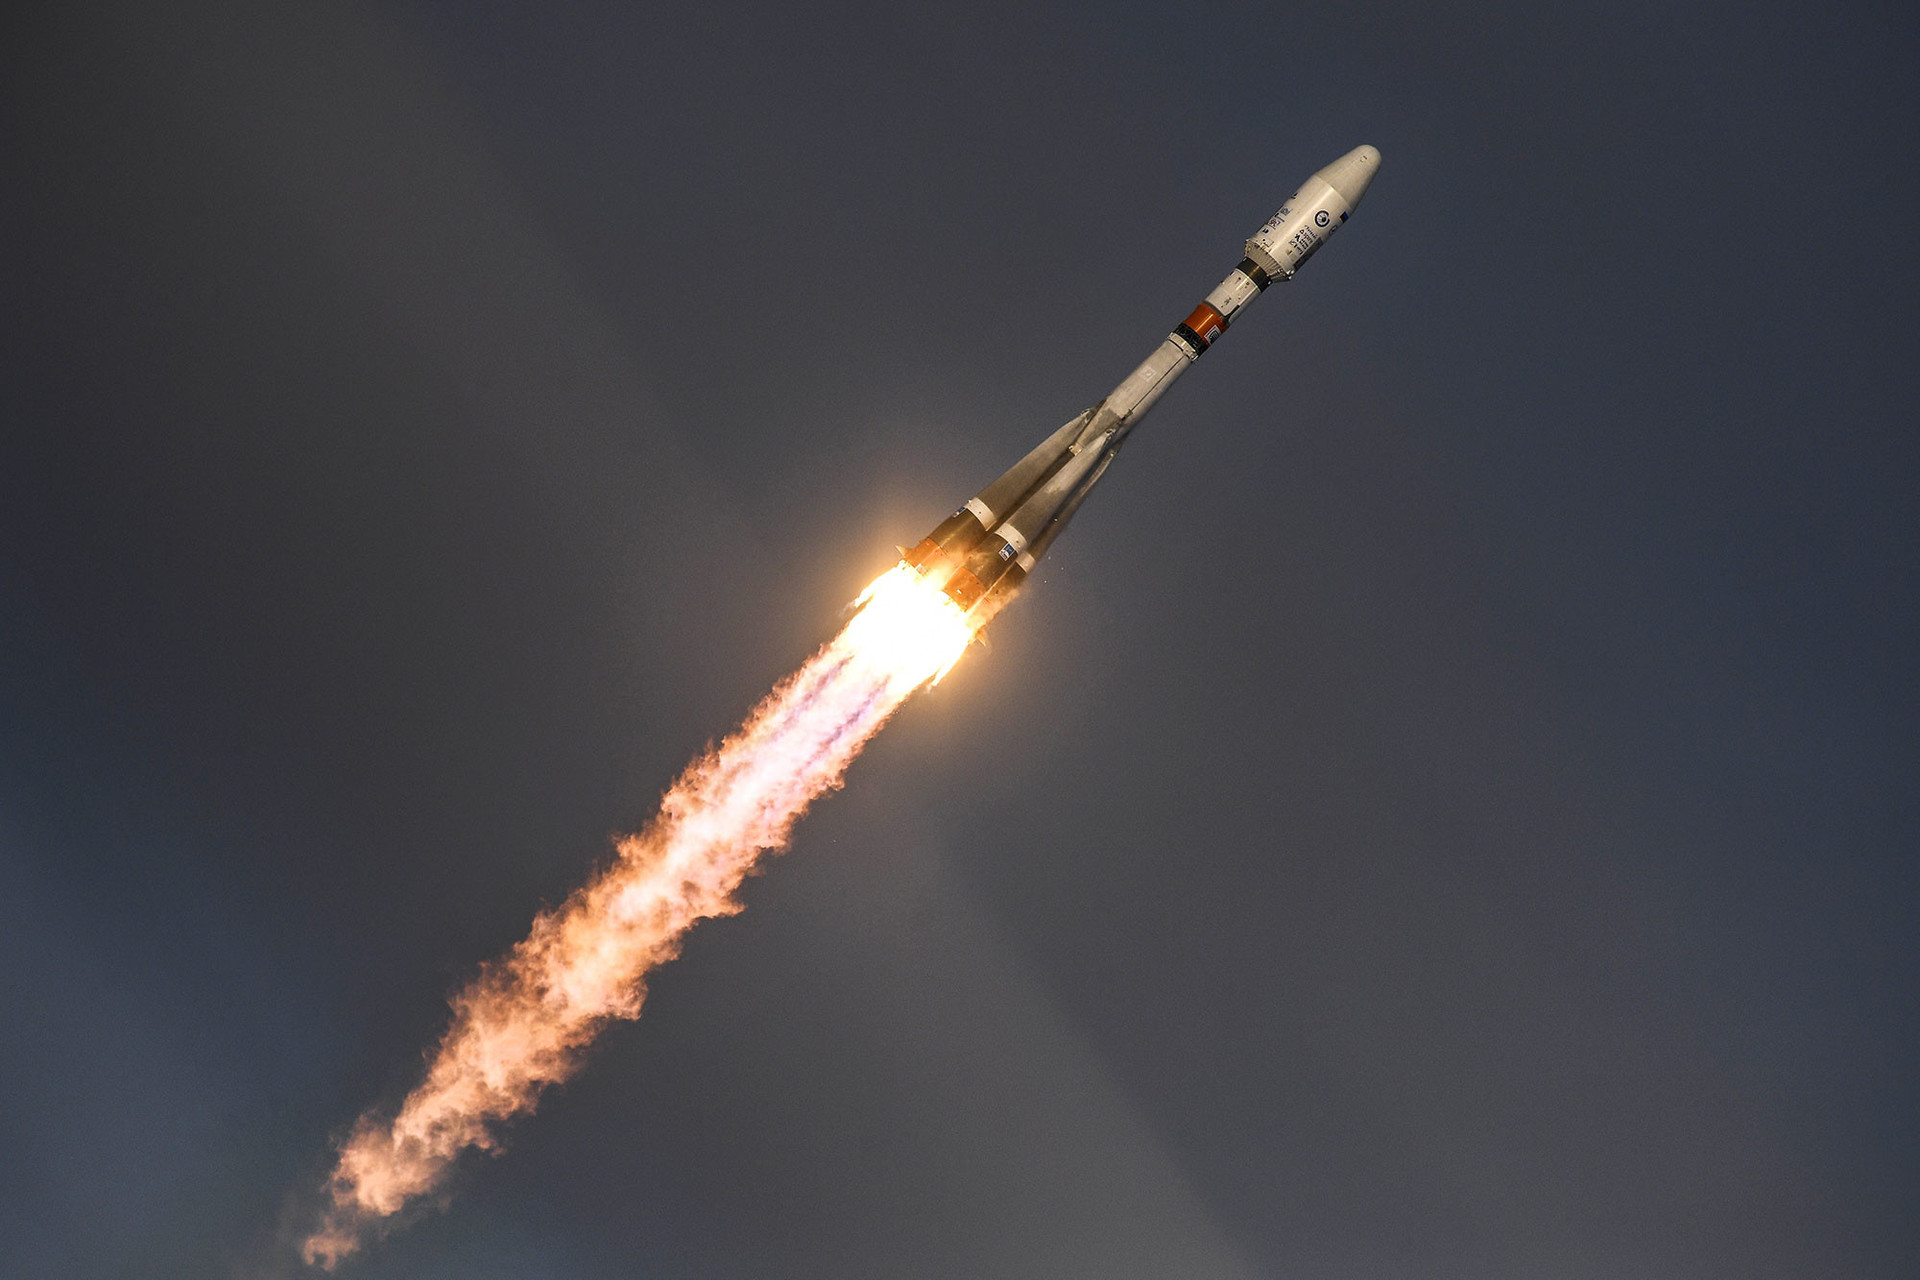  الصاروخ الحامل للقمر الصناعى المصرى الجديد إلى الفضاء (5)